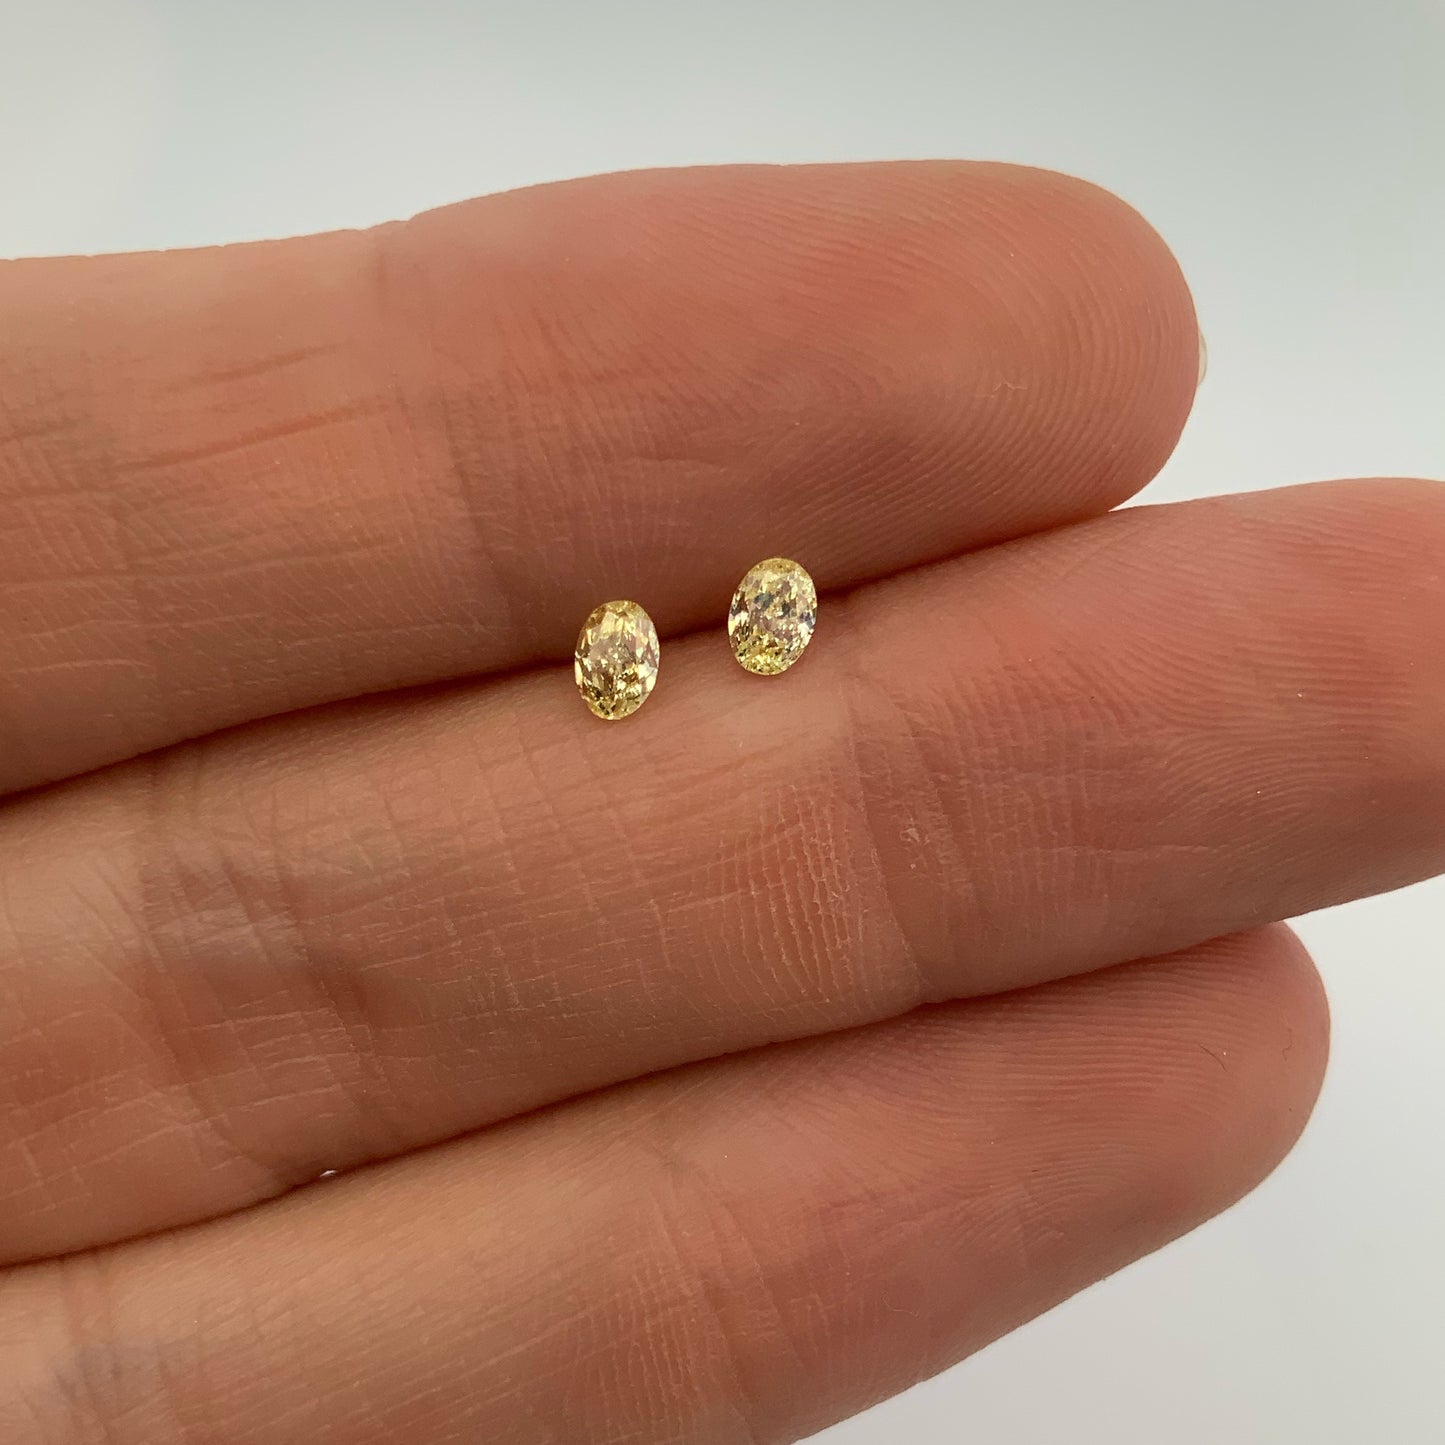 Par de Diamantes Amarillos en corte Ovalado de 0.33ct TOTAL / Medidas 3.91 x 2.82 mm